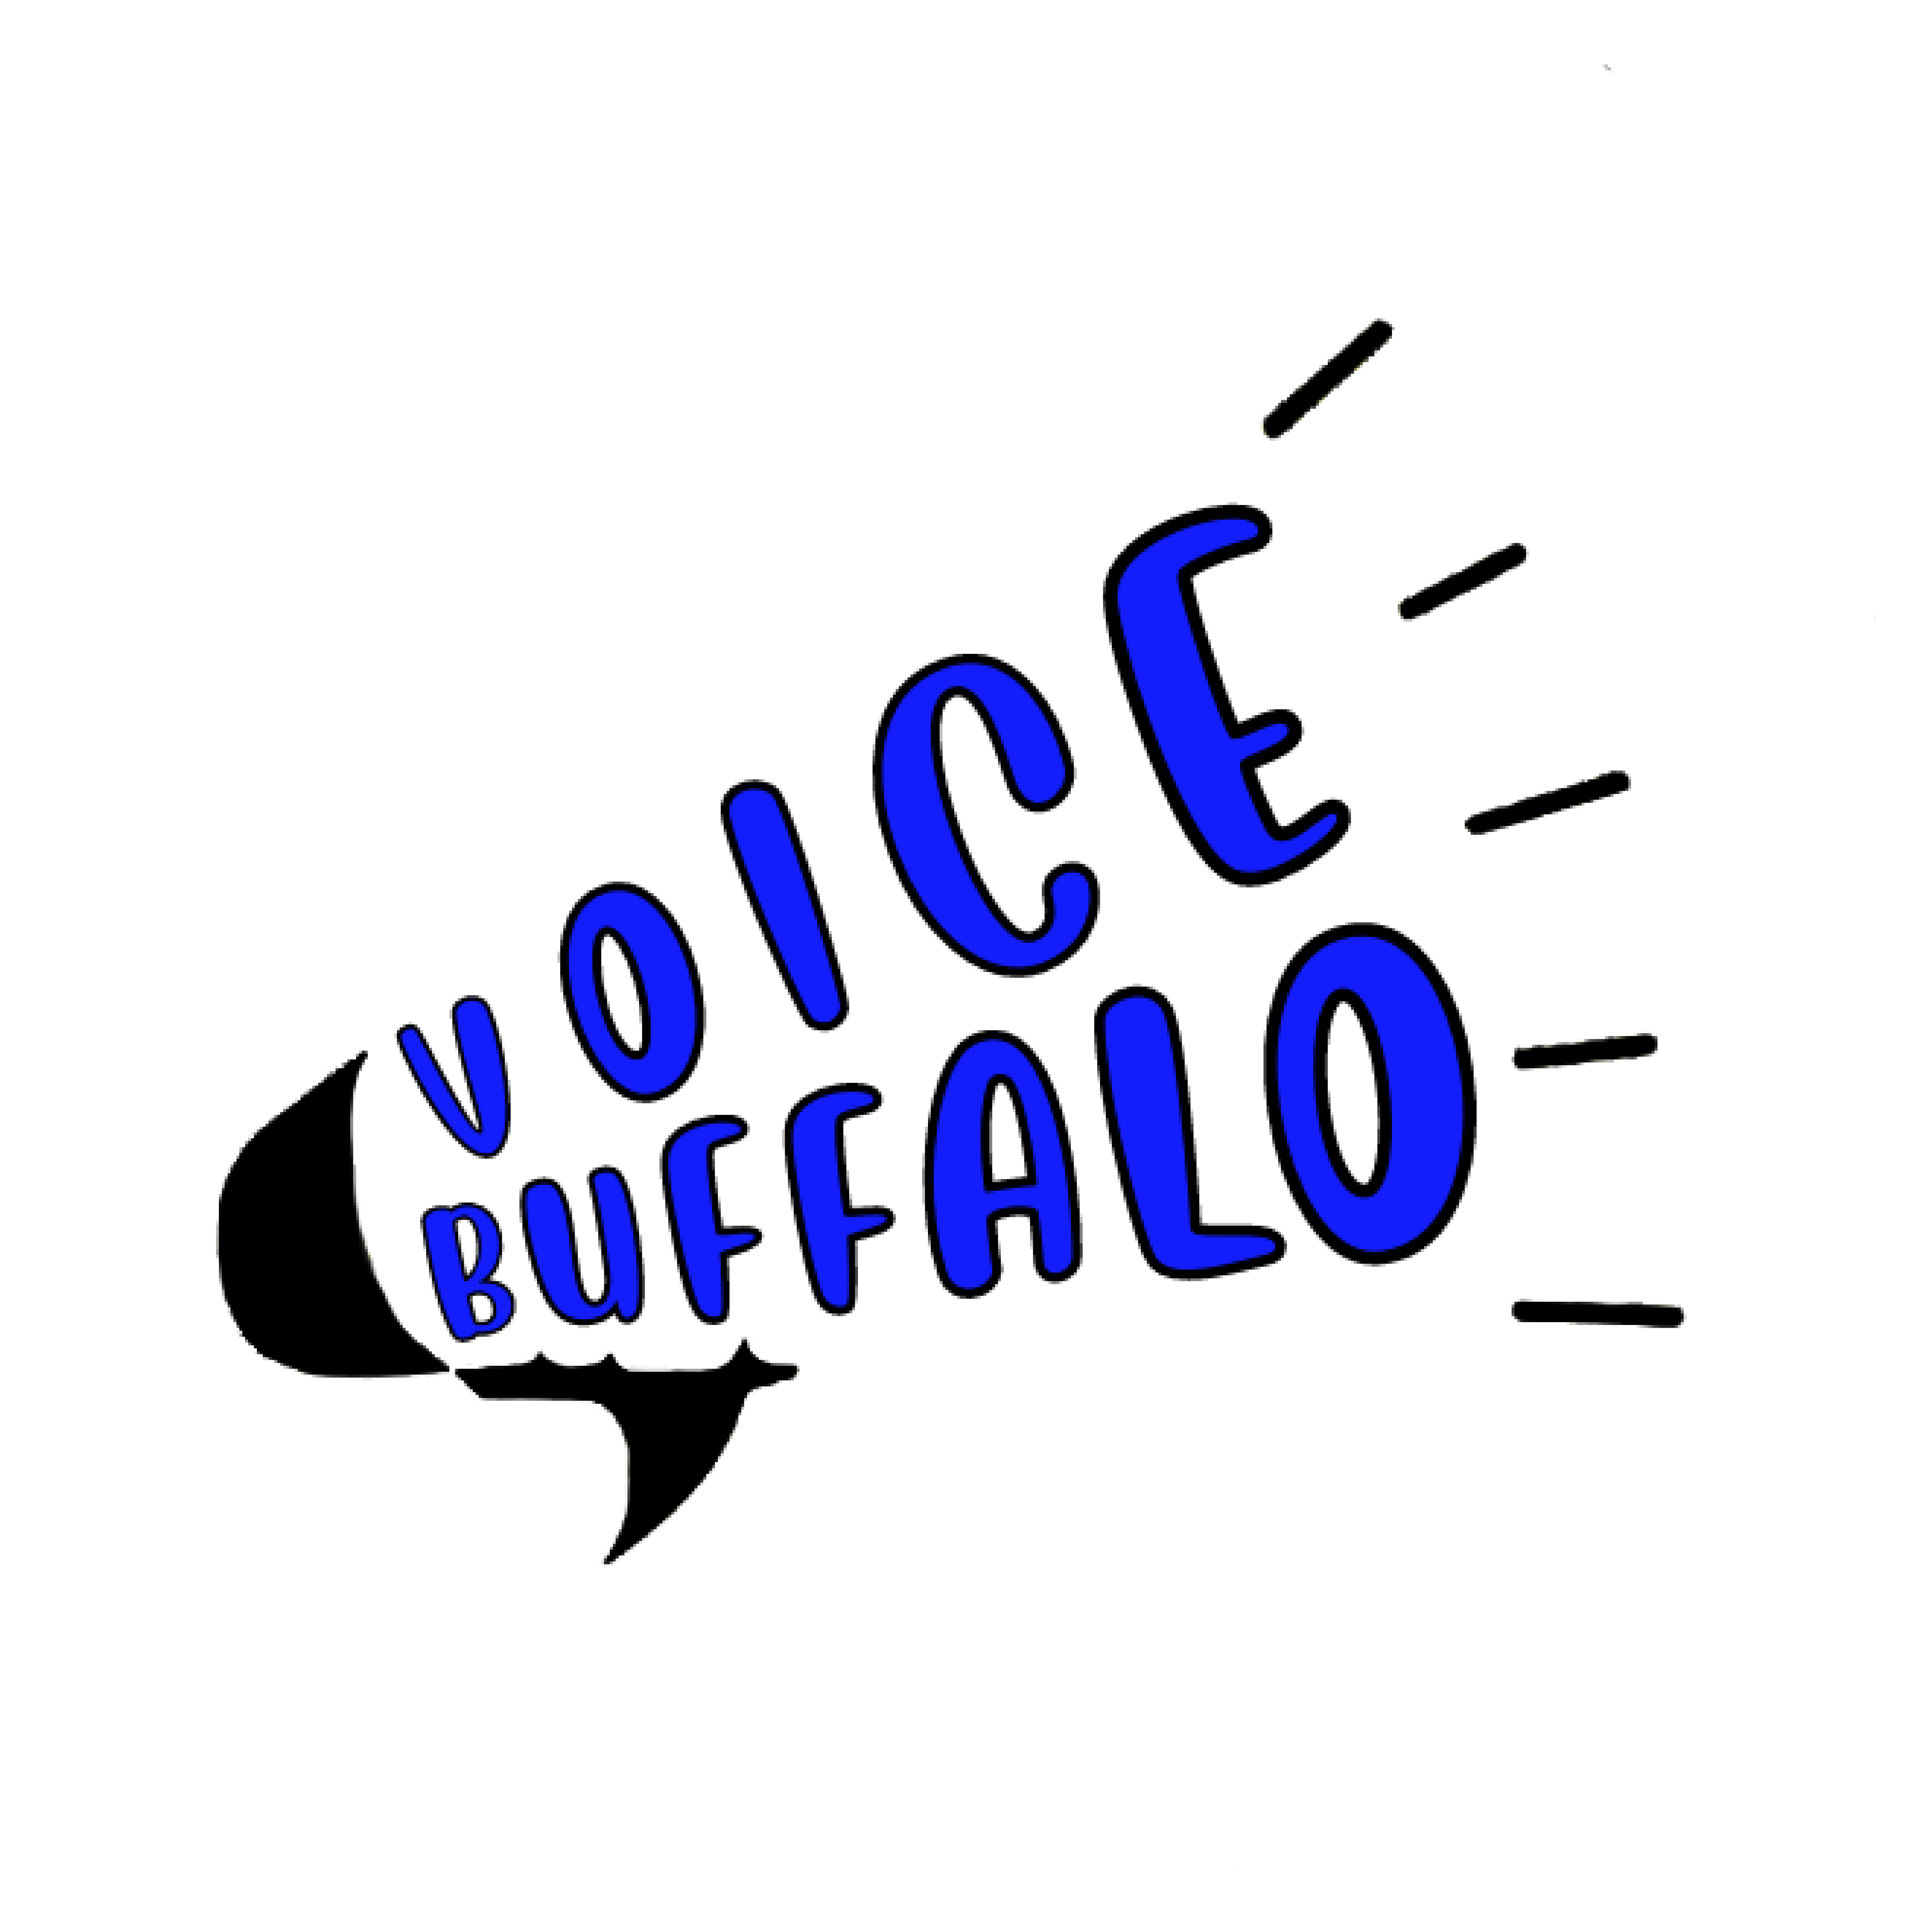 Voice Buffalo logo